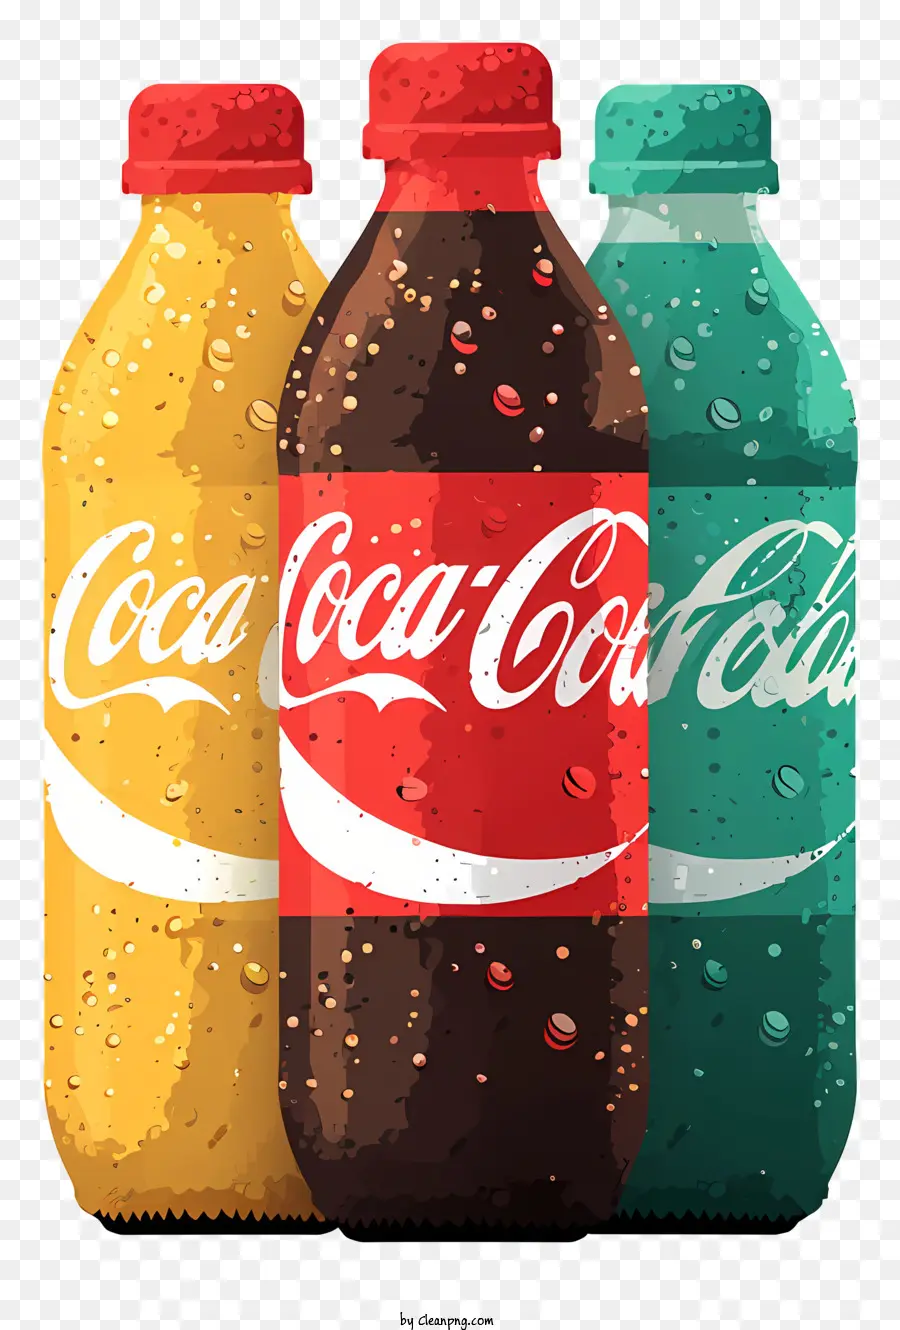 Coca Cola - Tre bottiglie di soda con etichette Coca-Cola